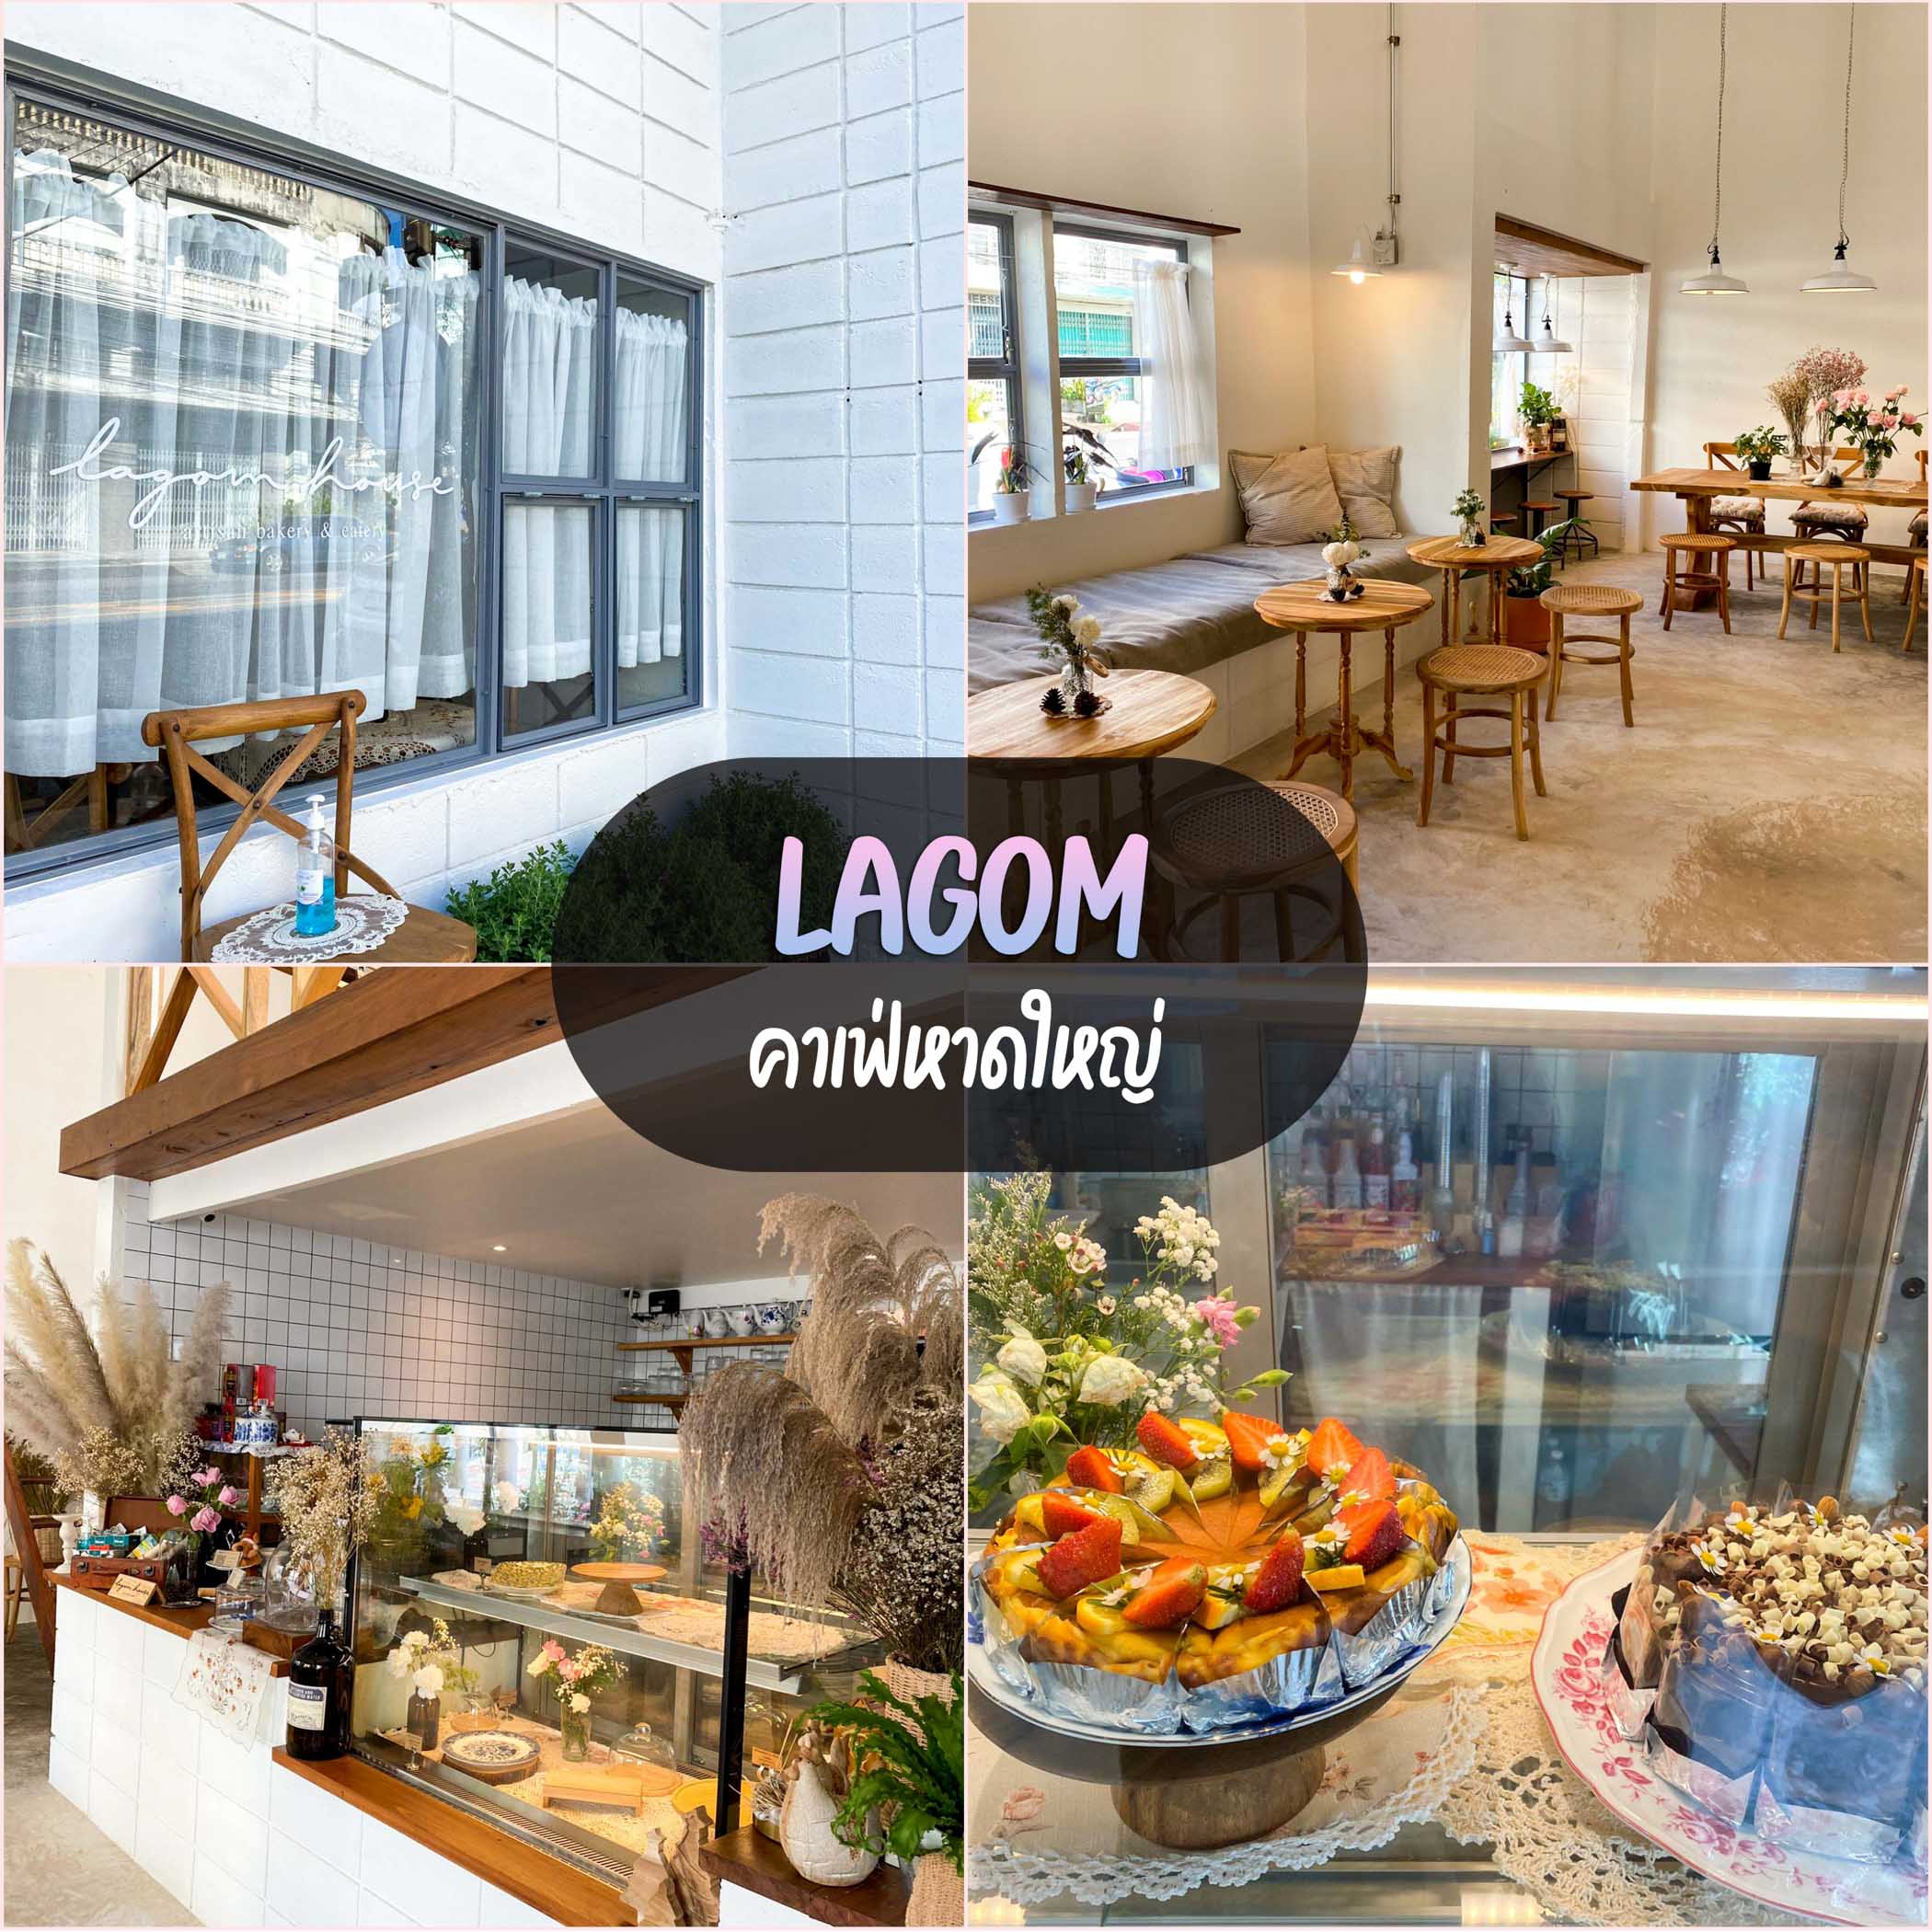 Lagom House Cafe หาดใหญ่ คาเฟ่สายโฮมมี่สีขาว ตัดกับไม้สวยๆ ฟิลอบอุ่น พนักงานน่ารัก มีชั้นสองด้วยน้าดีไซน์จัดว่าเด็ด